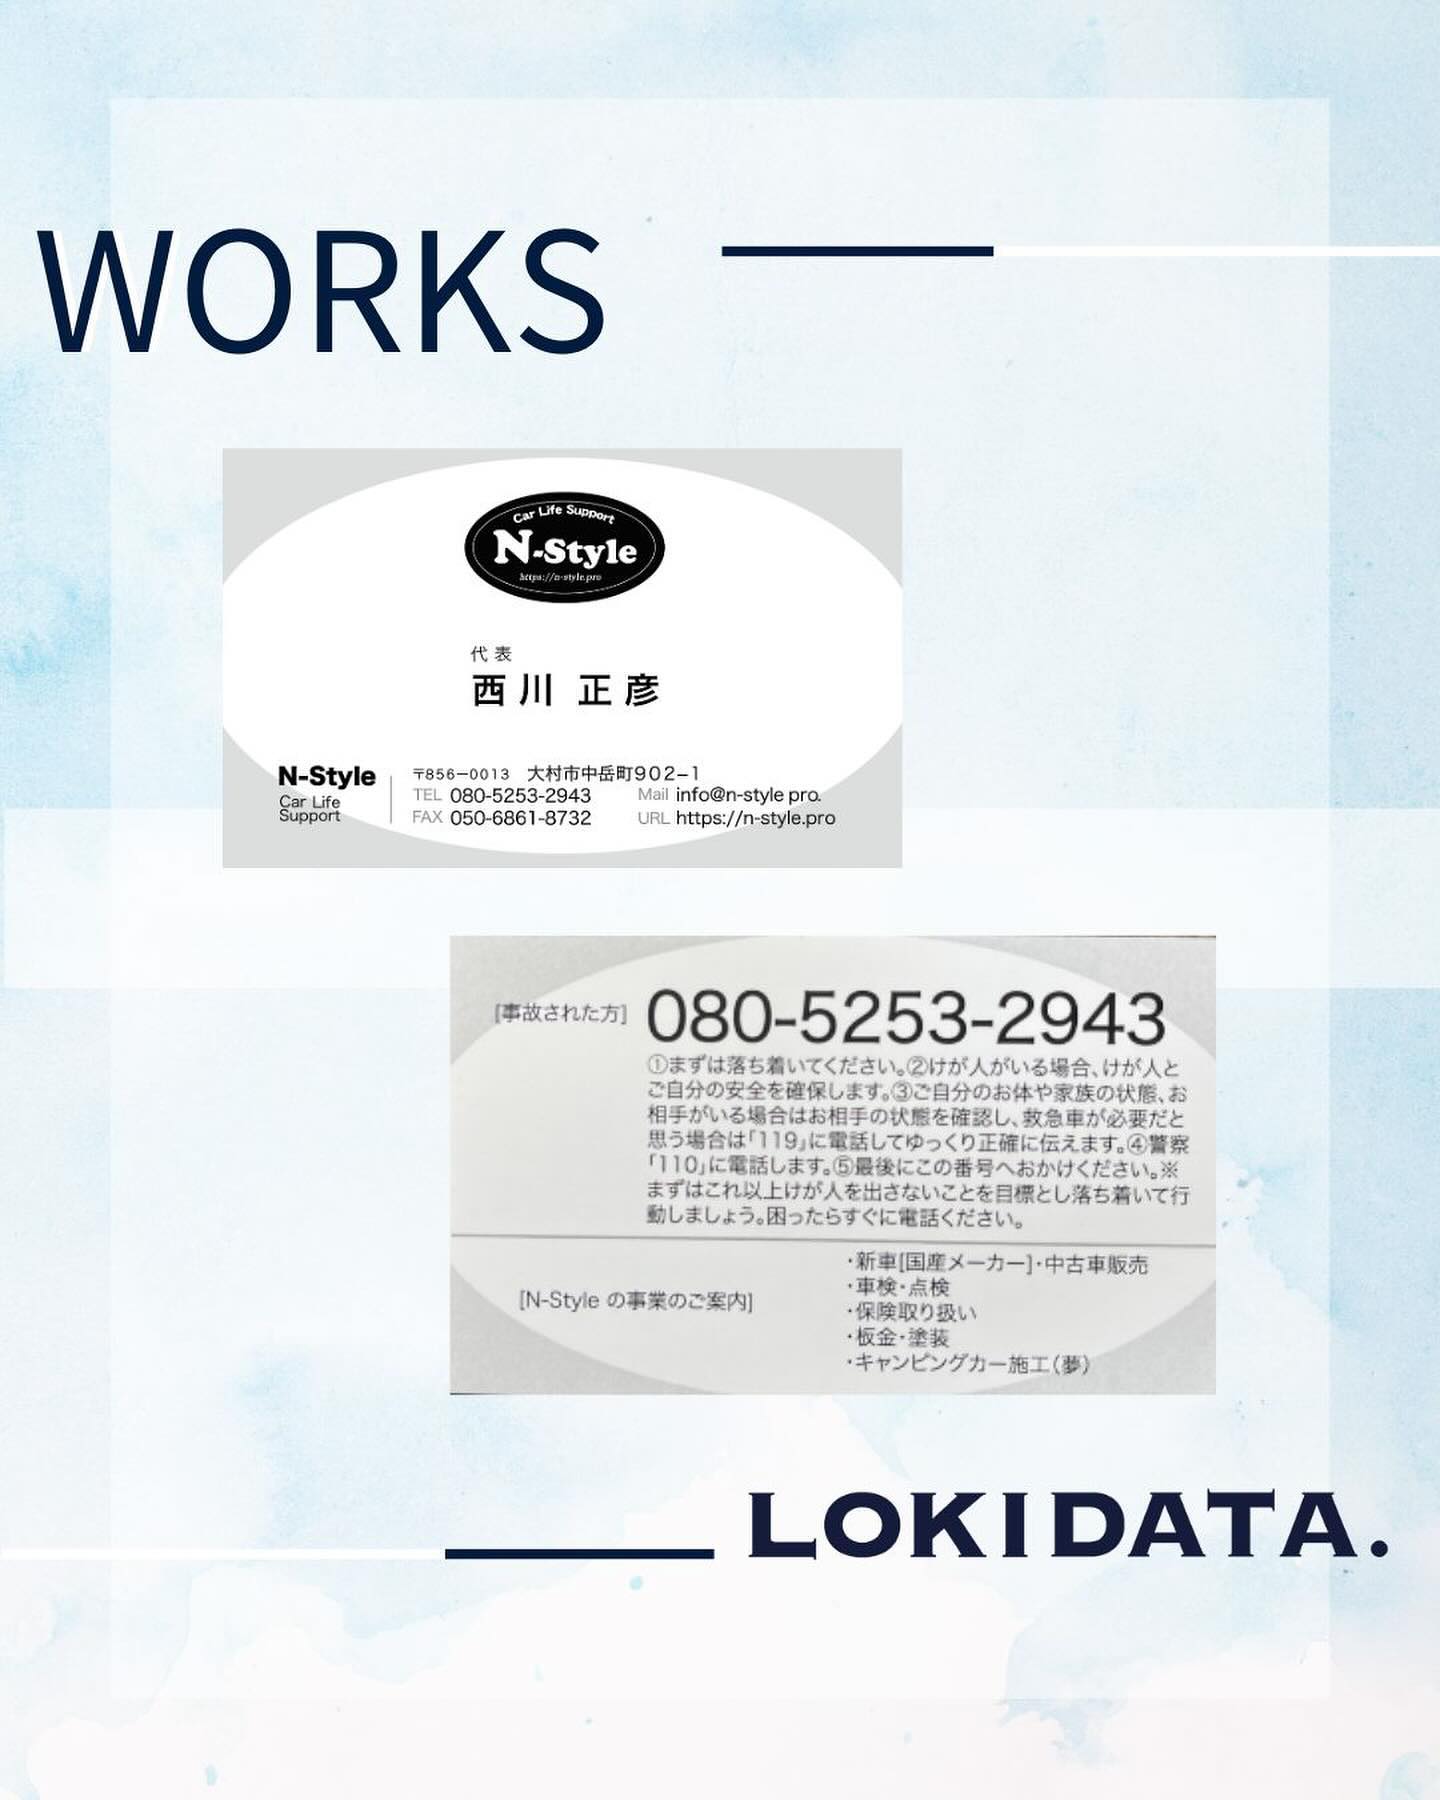 @loki.data ←当社はお客様の想いに寄り添います。

名刺をデザイン制作させていただきました

・・・・・・・・・・・・・
【お客様紹介】

◆ N-style 様
◆ （ 車屋さん）
場所：大村市中岳町902-1
おすすめ：車検・点検
・・・・・・・・・・・・・

LOKI DATA.は
印刷物デザイン制作だけじゃない！
ホームページ制作依頼も対応可能。
パソコンでのお悩みにも対応可能。

「いま悩む・いま困る・ことありませんか？」
︎DX（業務効率化したい）
︎ホームページ作りたい
︎チラシ・ポスター・名刺作りたい
︎広告だしたい
︎データー復旧してほしい
︎周辺機器設定してほしい
︎パソコン修理してほしい
︎操作がわからない

そんな悩む・困るに対応します！
おぉ任せあ〜れ/最速対応️
長崎県大村市 ロキデータ→@loki.data
ホームページ制作お任せ下さい。
その他パソコン関係お任せ下さい。

詳しくは↓プロフィールから
@loki.data

最後まで読んで頂き
ありがとうございます️